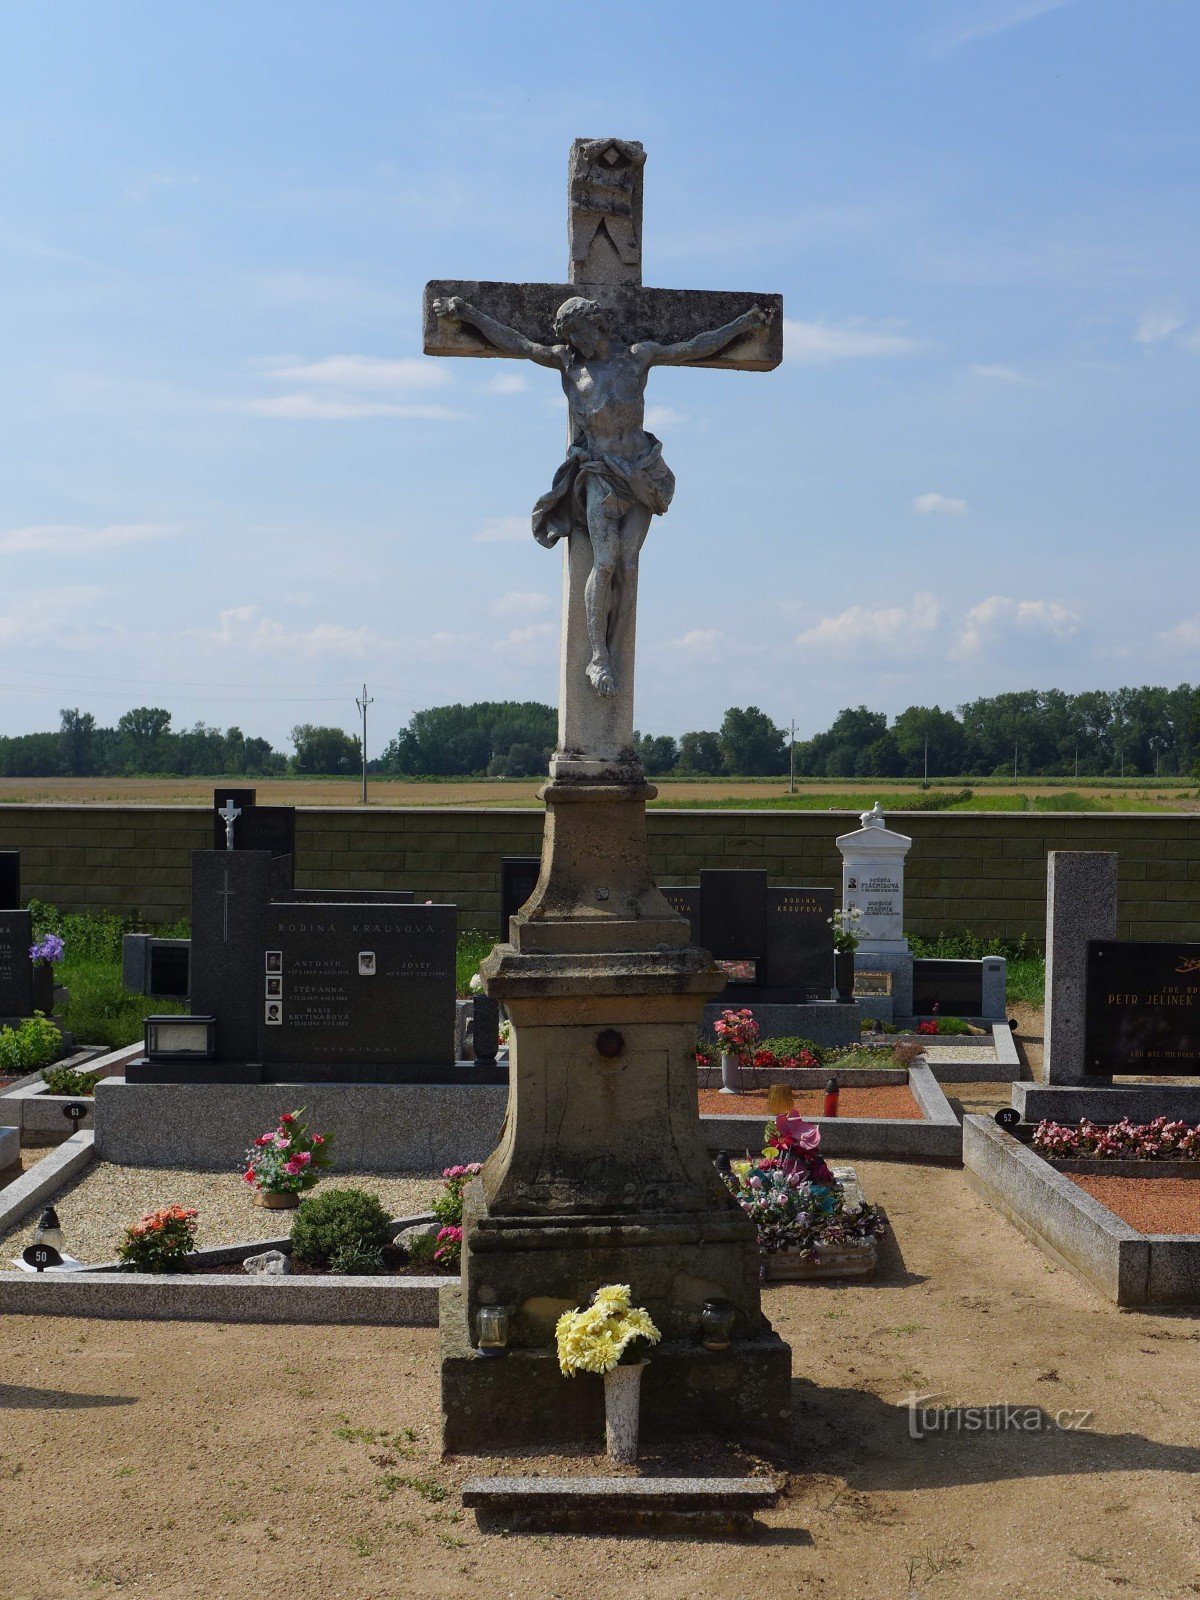 Nemčičky - centraal kruis op de begraafplaats